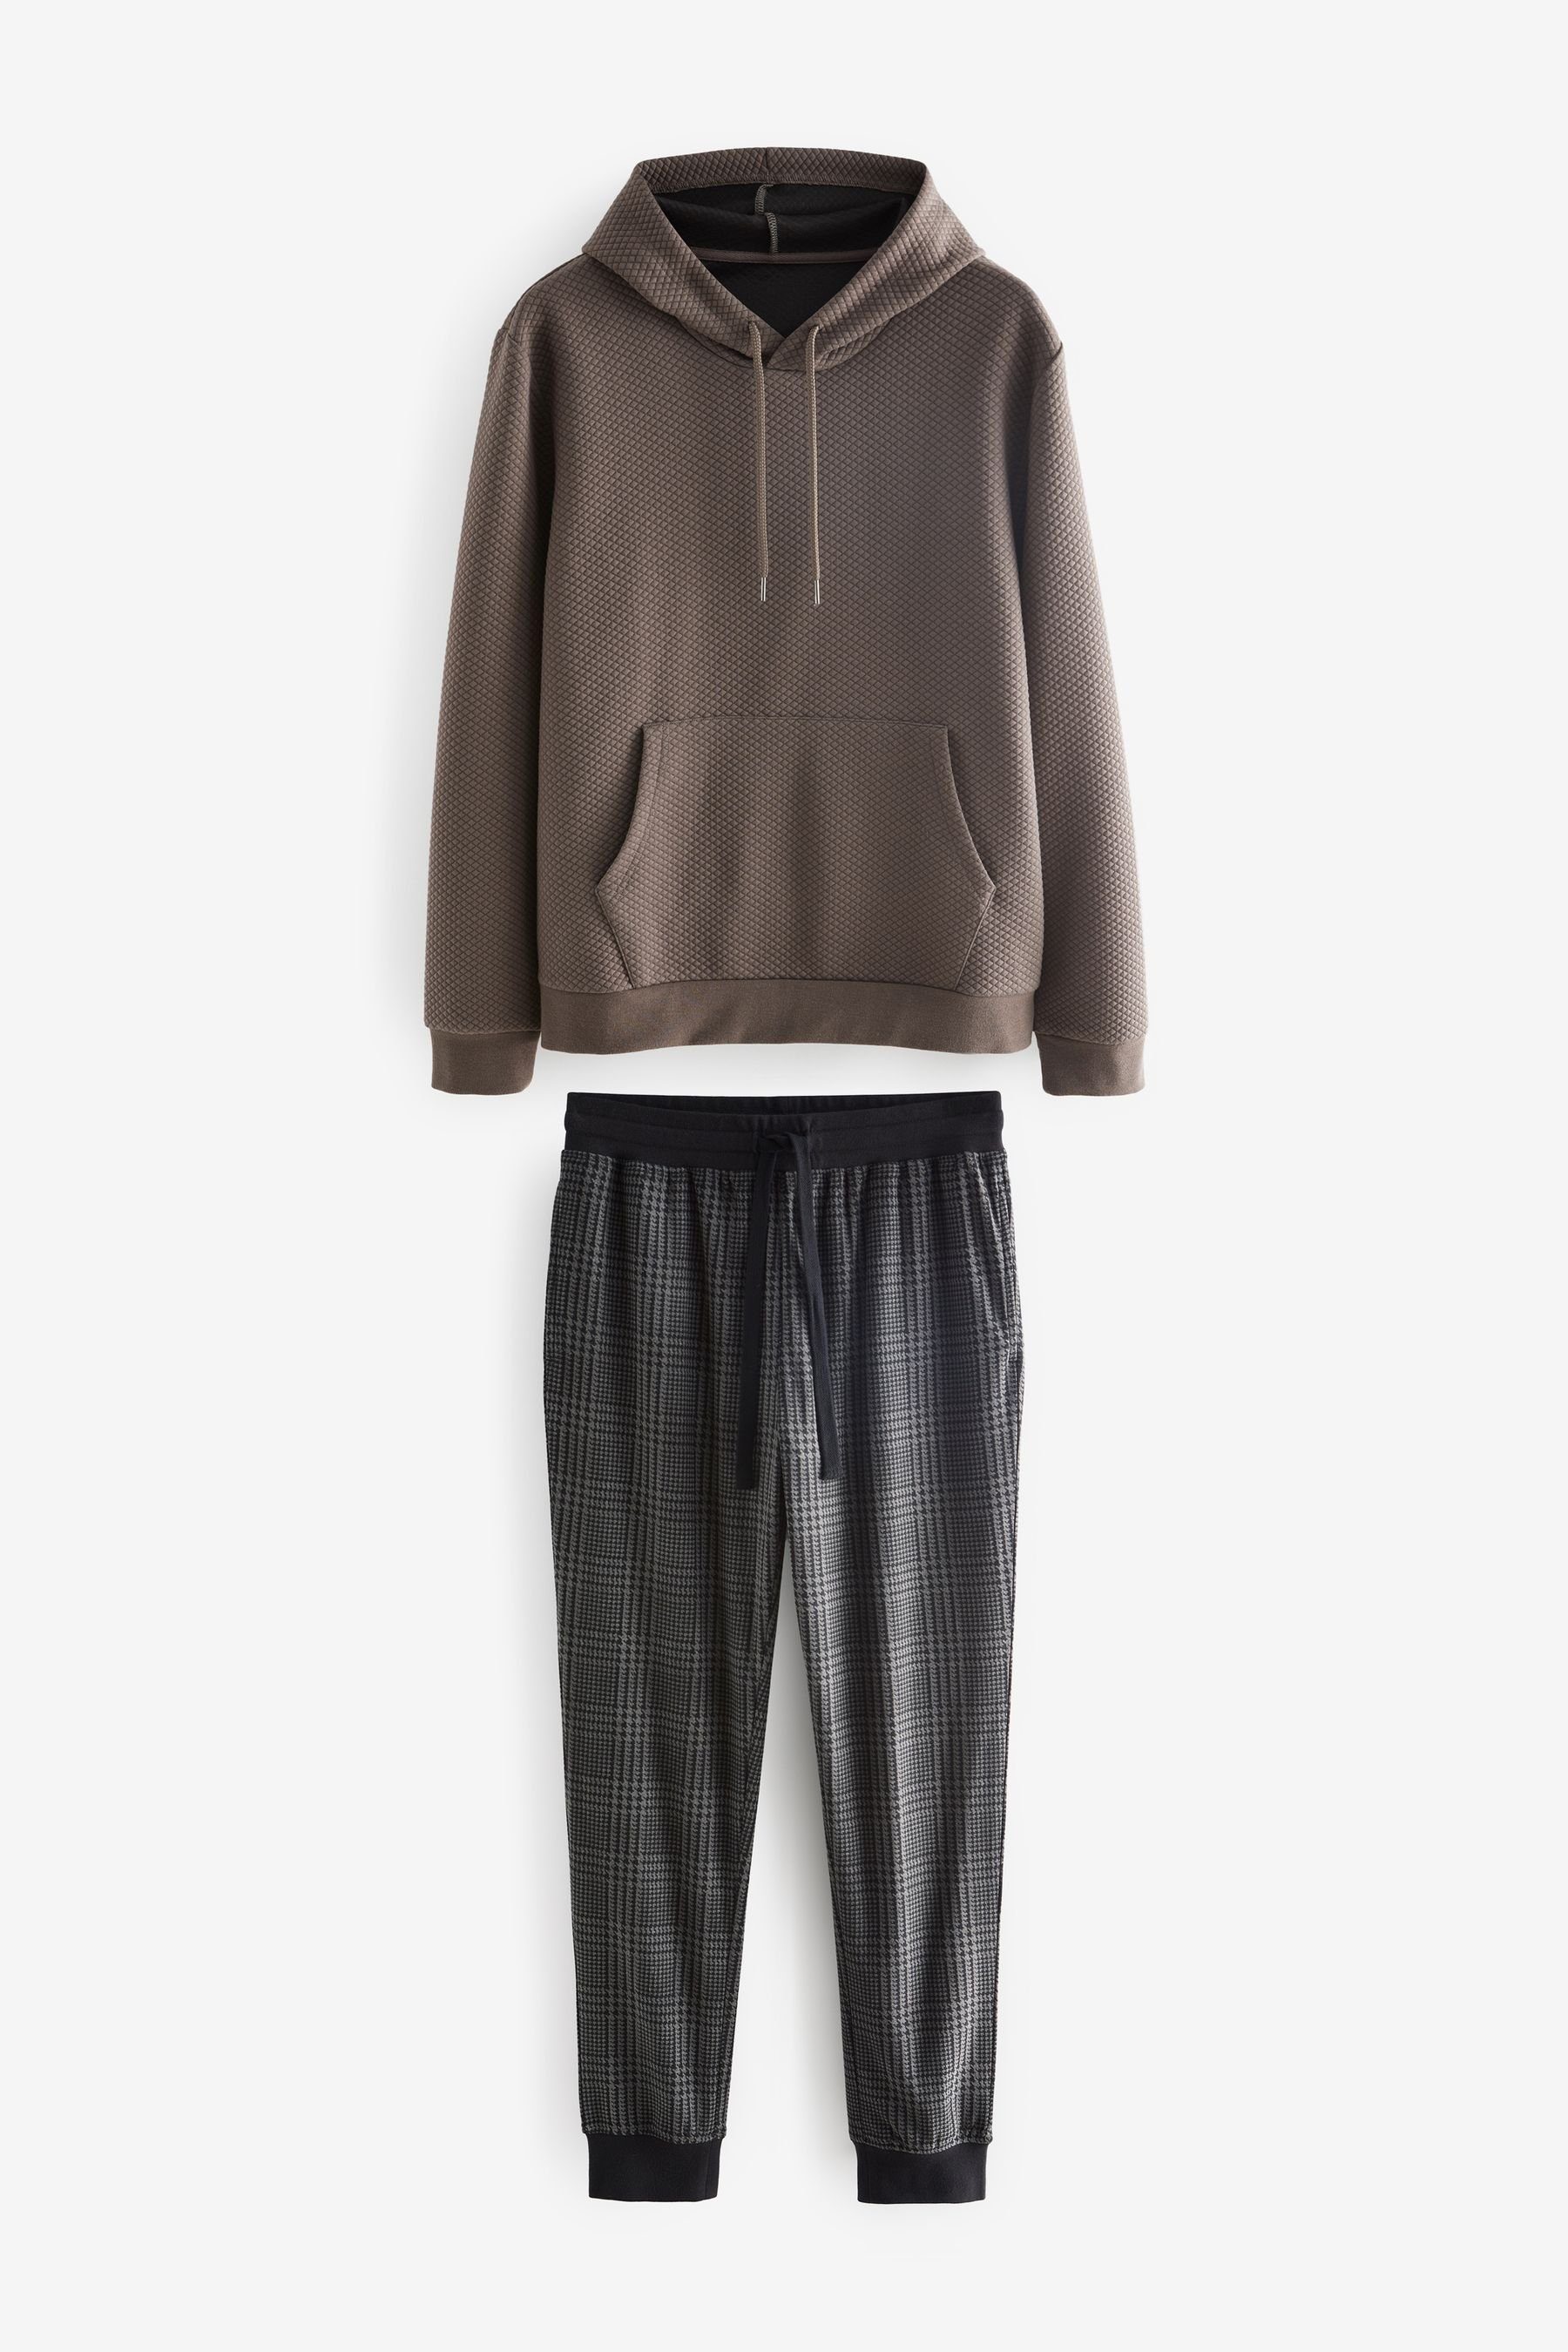 Next Pyjama MotionFlex Kuscheliger Schlafanzug mit Bündchen (2 tlg) Neutral/Grey Check Textured Hooded